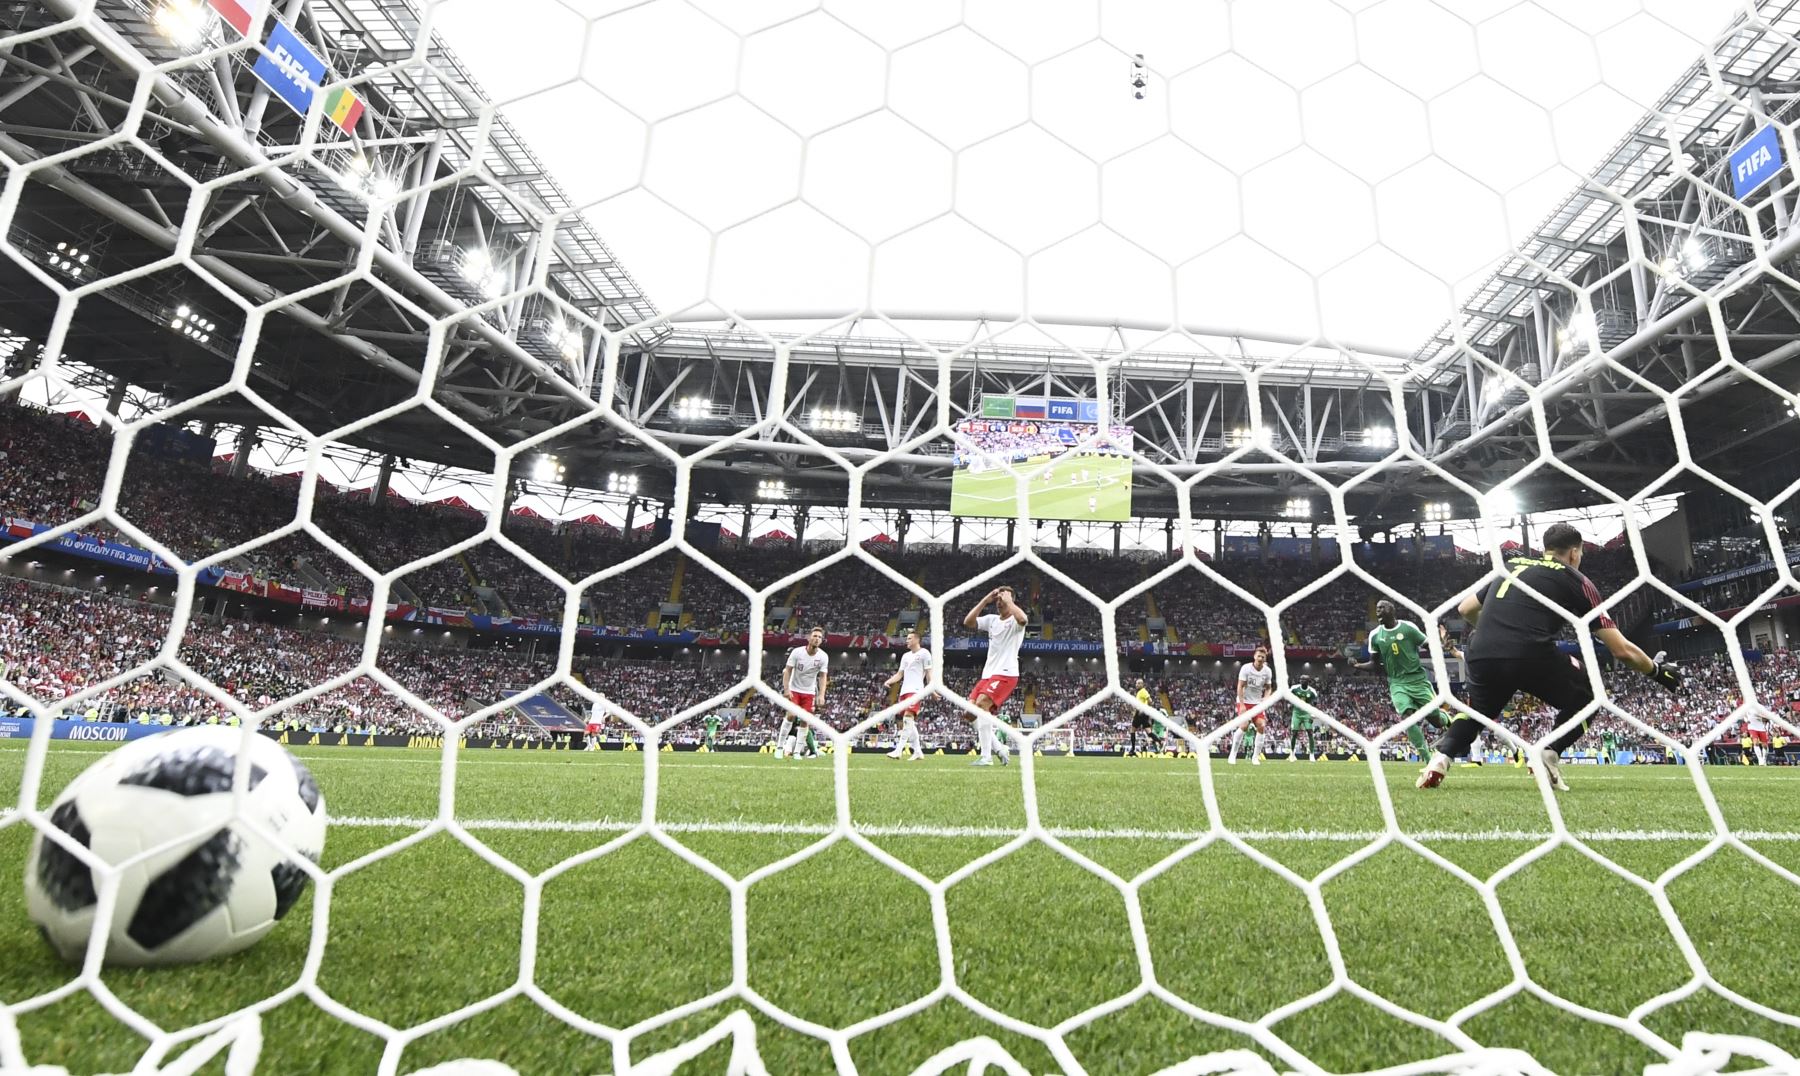 El defensor Thiago Rangel Cionek (C) de Polonia reacciona después de anotar un gol al lado del delantero de Senegal Mame Biram Diouf (R) celebrando durante el partido de fútbol del Grupo H Rusia 2018 entre Polonia y Senegal en el Spartak Stadium de Moscú el 19 de junio de 2018 . / AFP